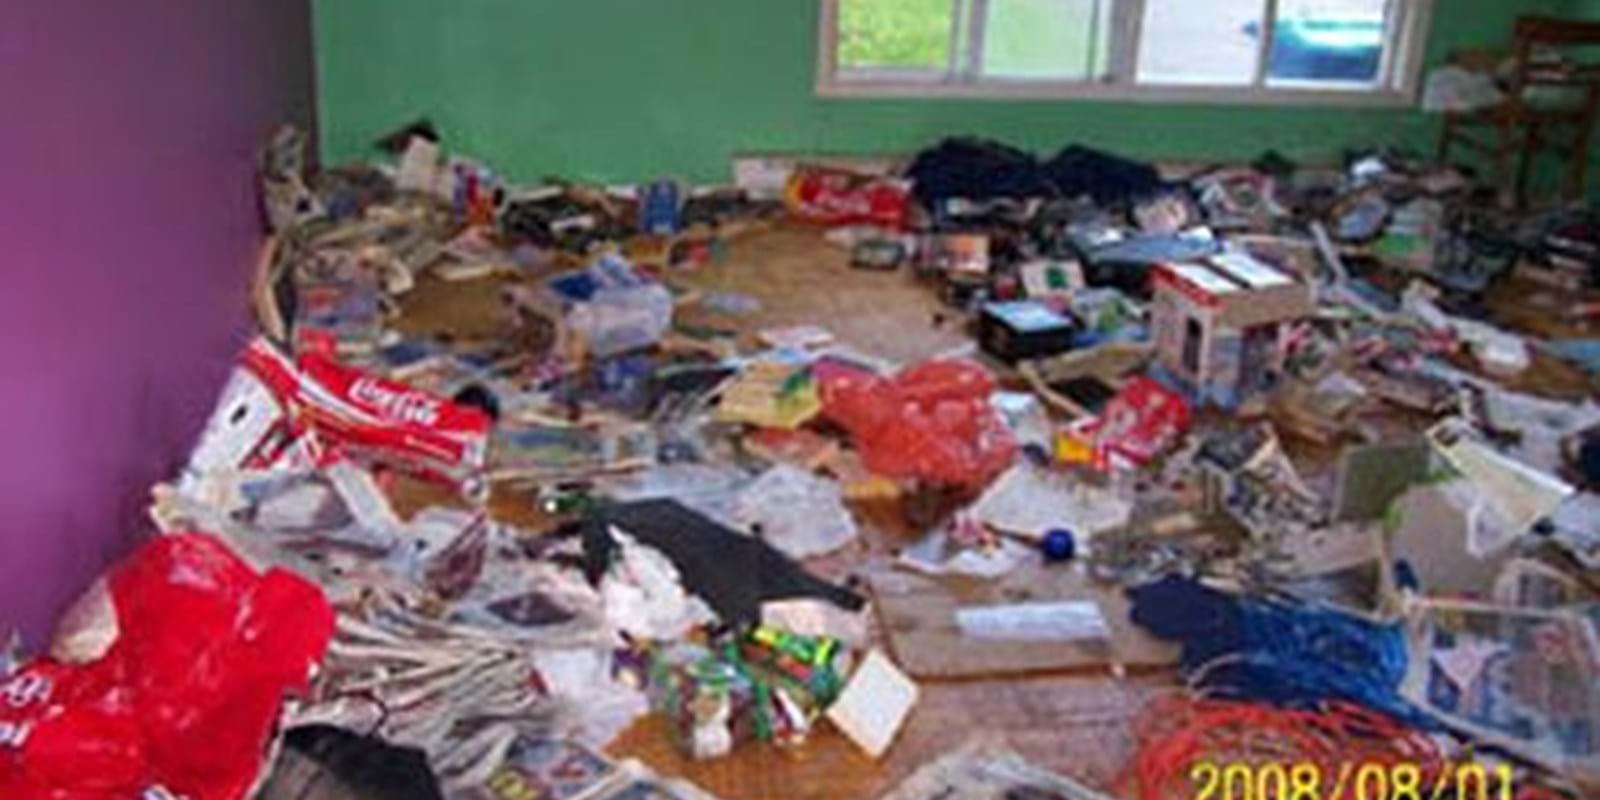 Locataires : Laisser son appartement saccagé a des conséquences importantes